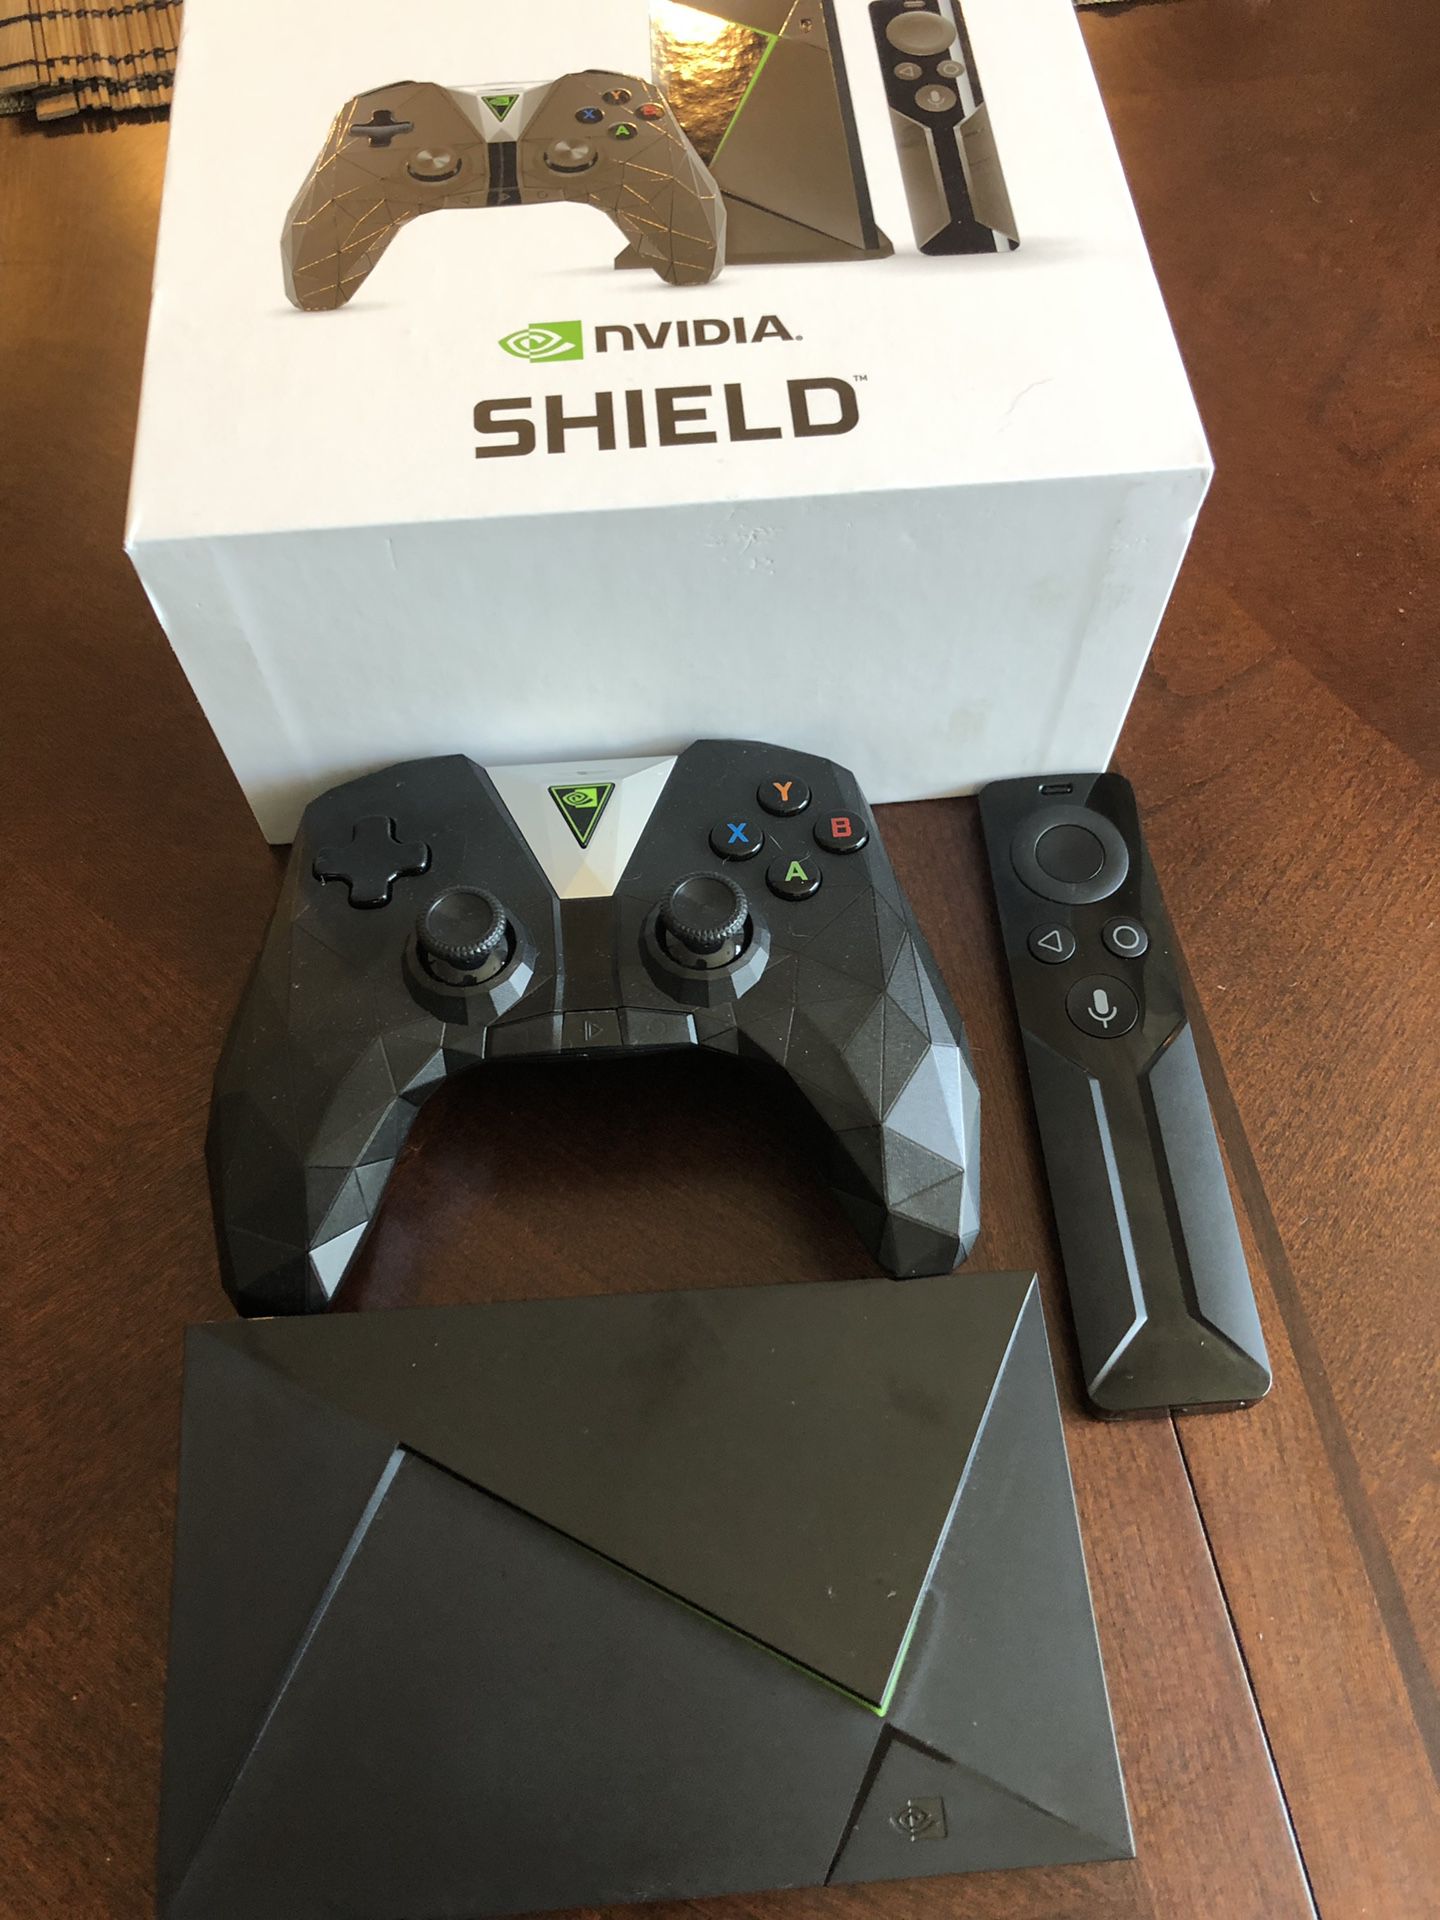 Nvidia shield - like new